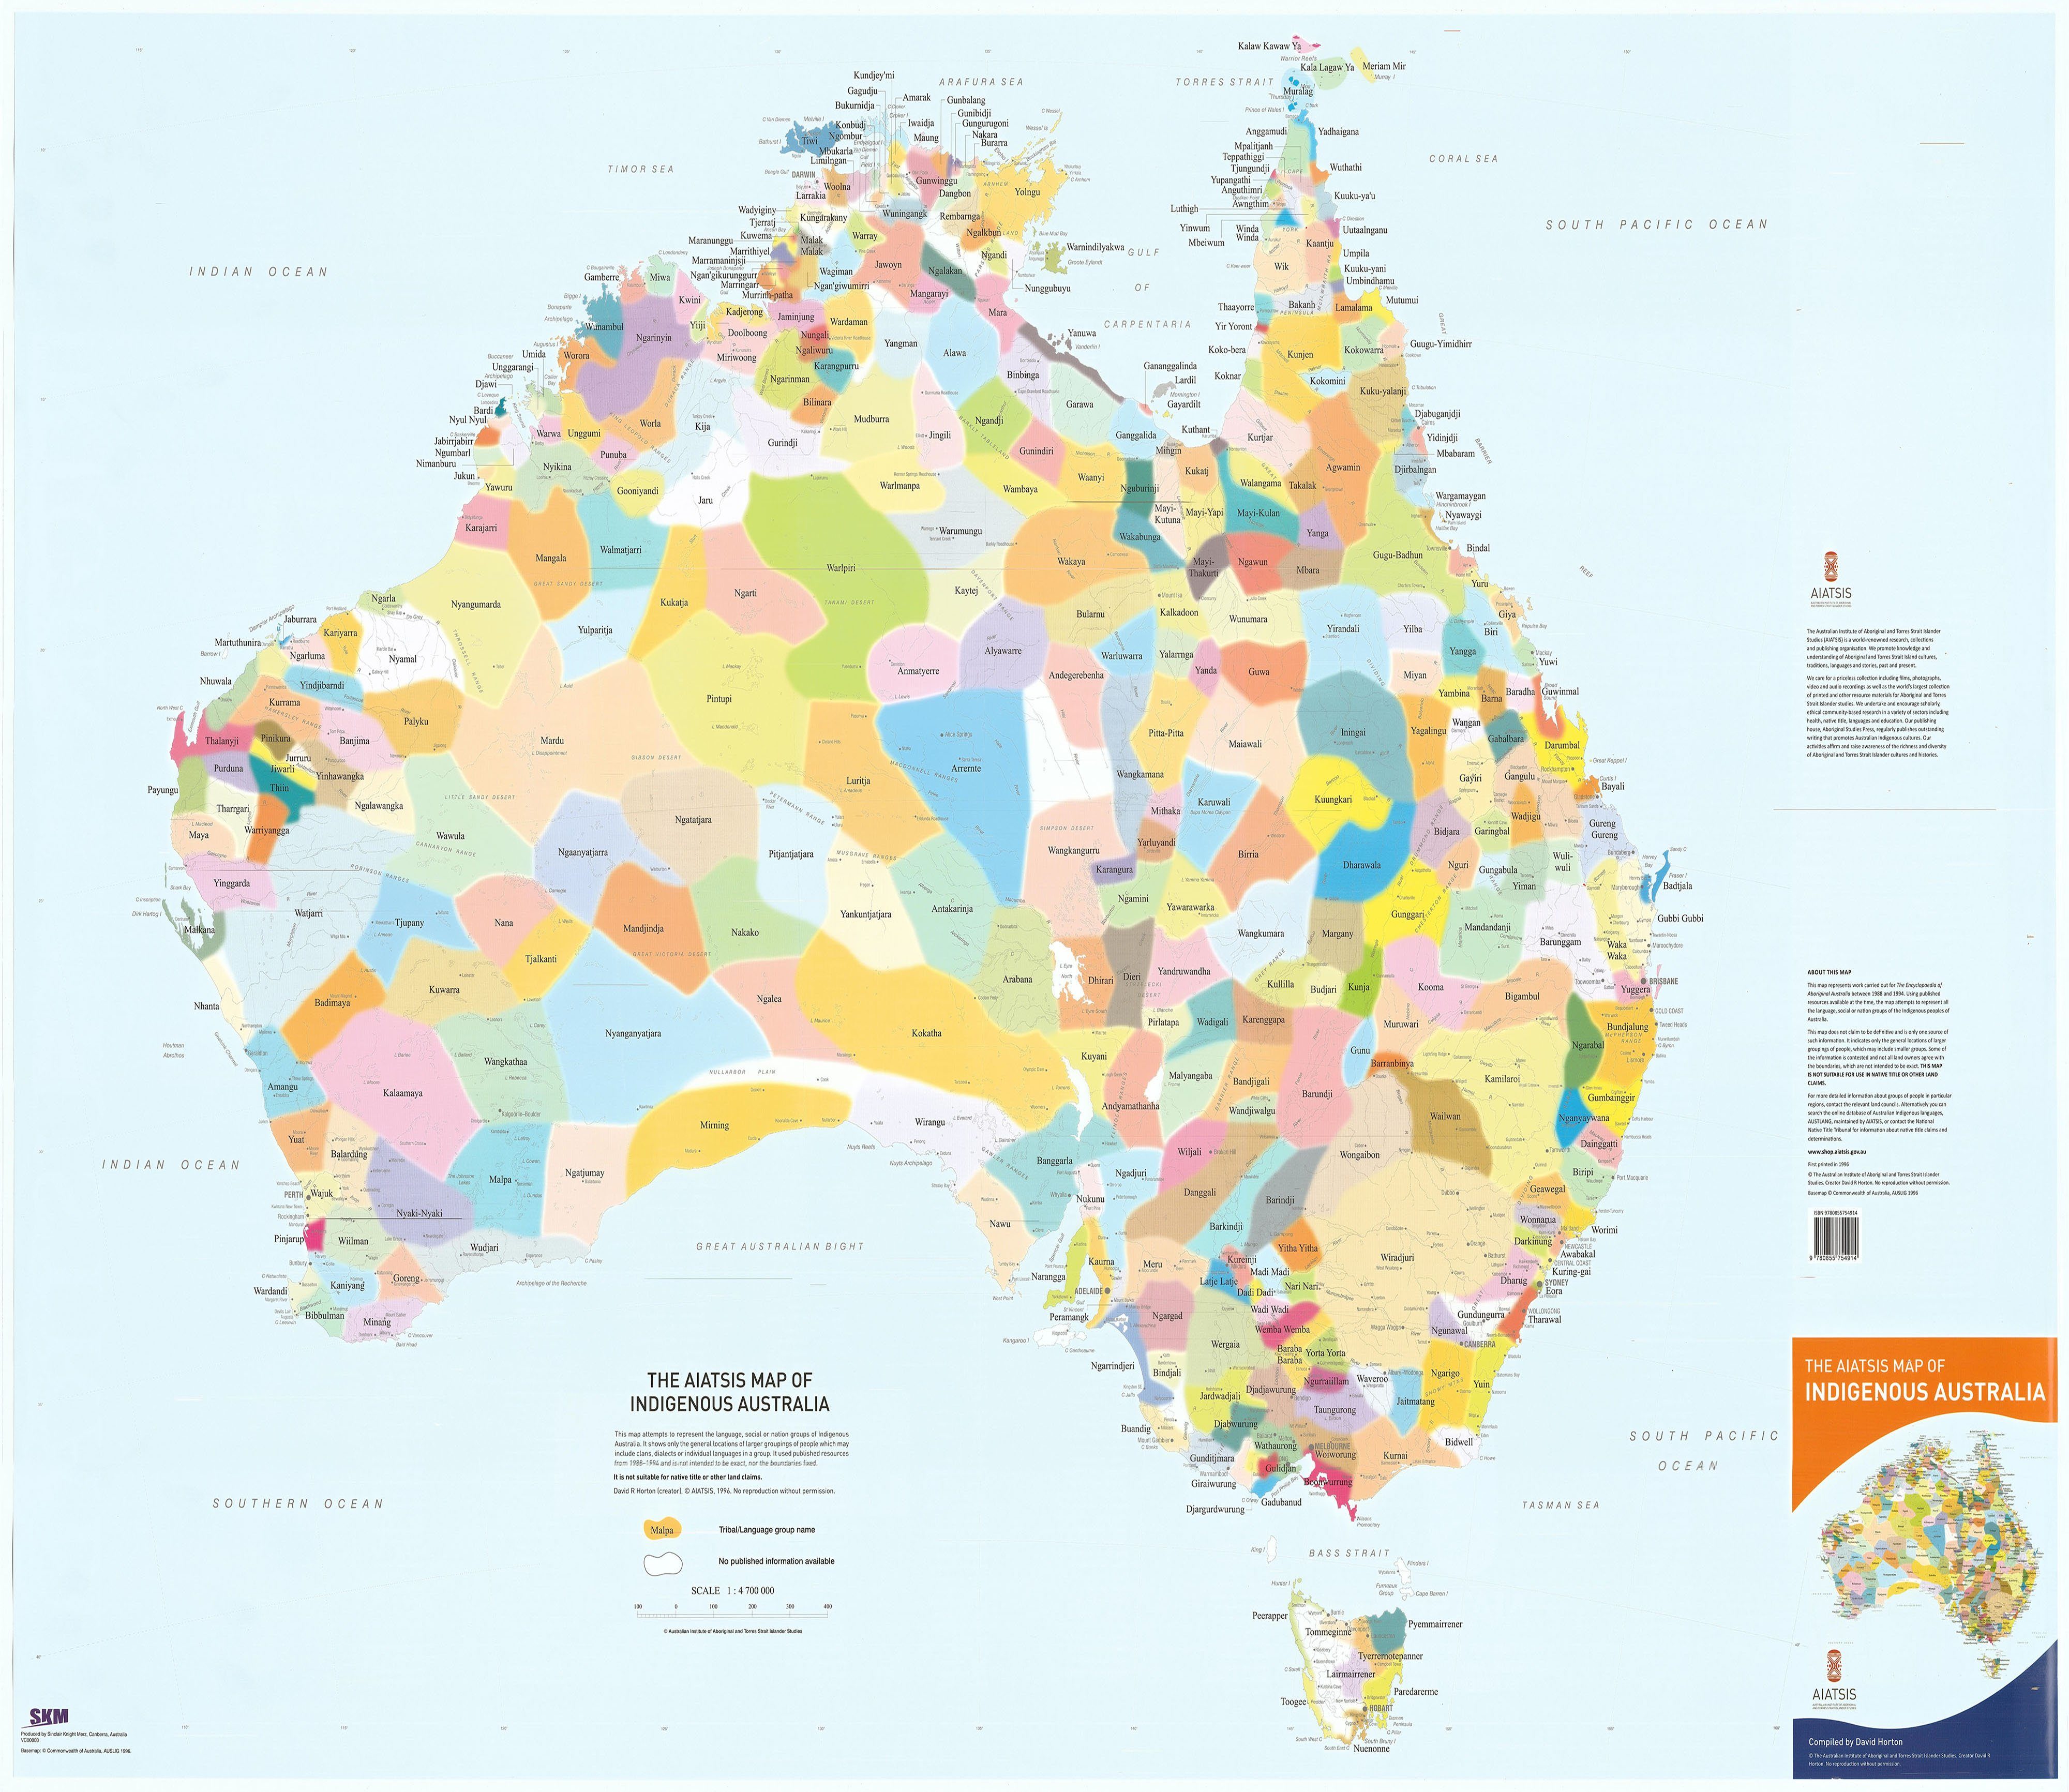 australia-aboriginal.jpg